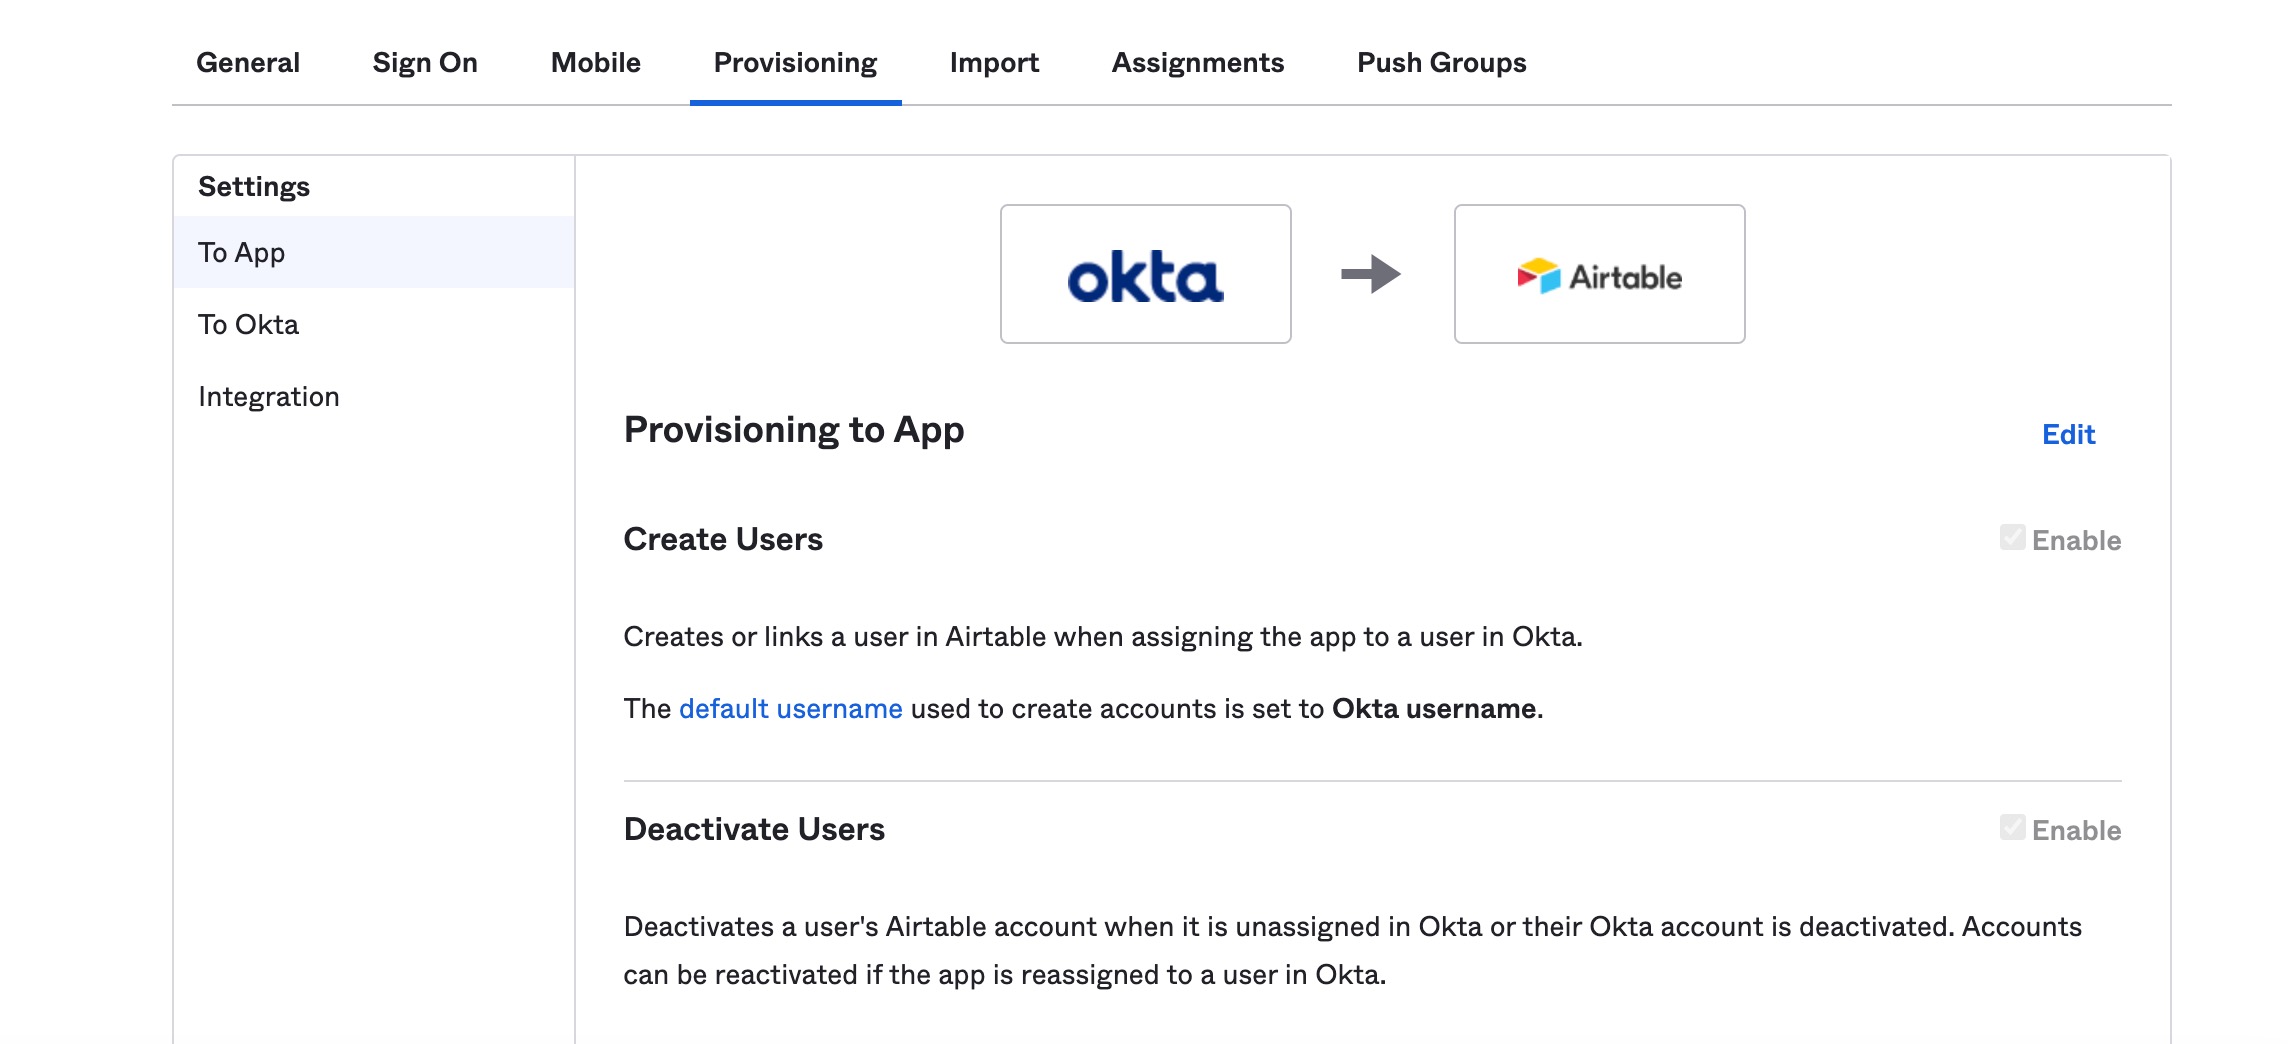 okta_app_settings